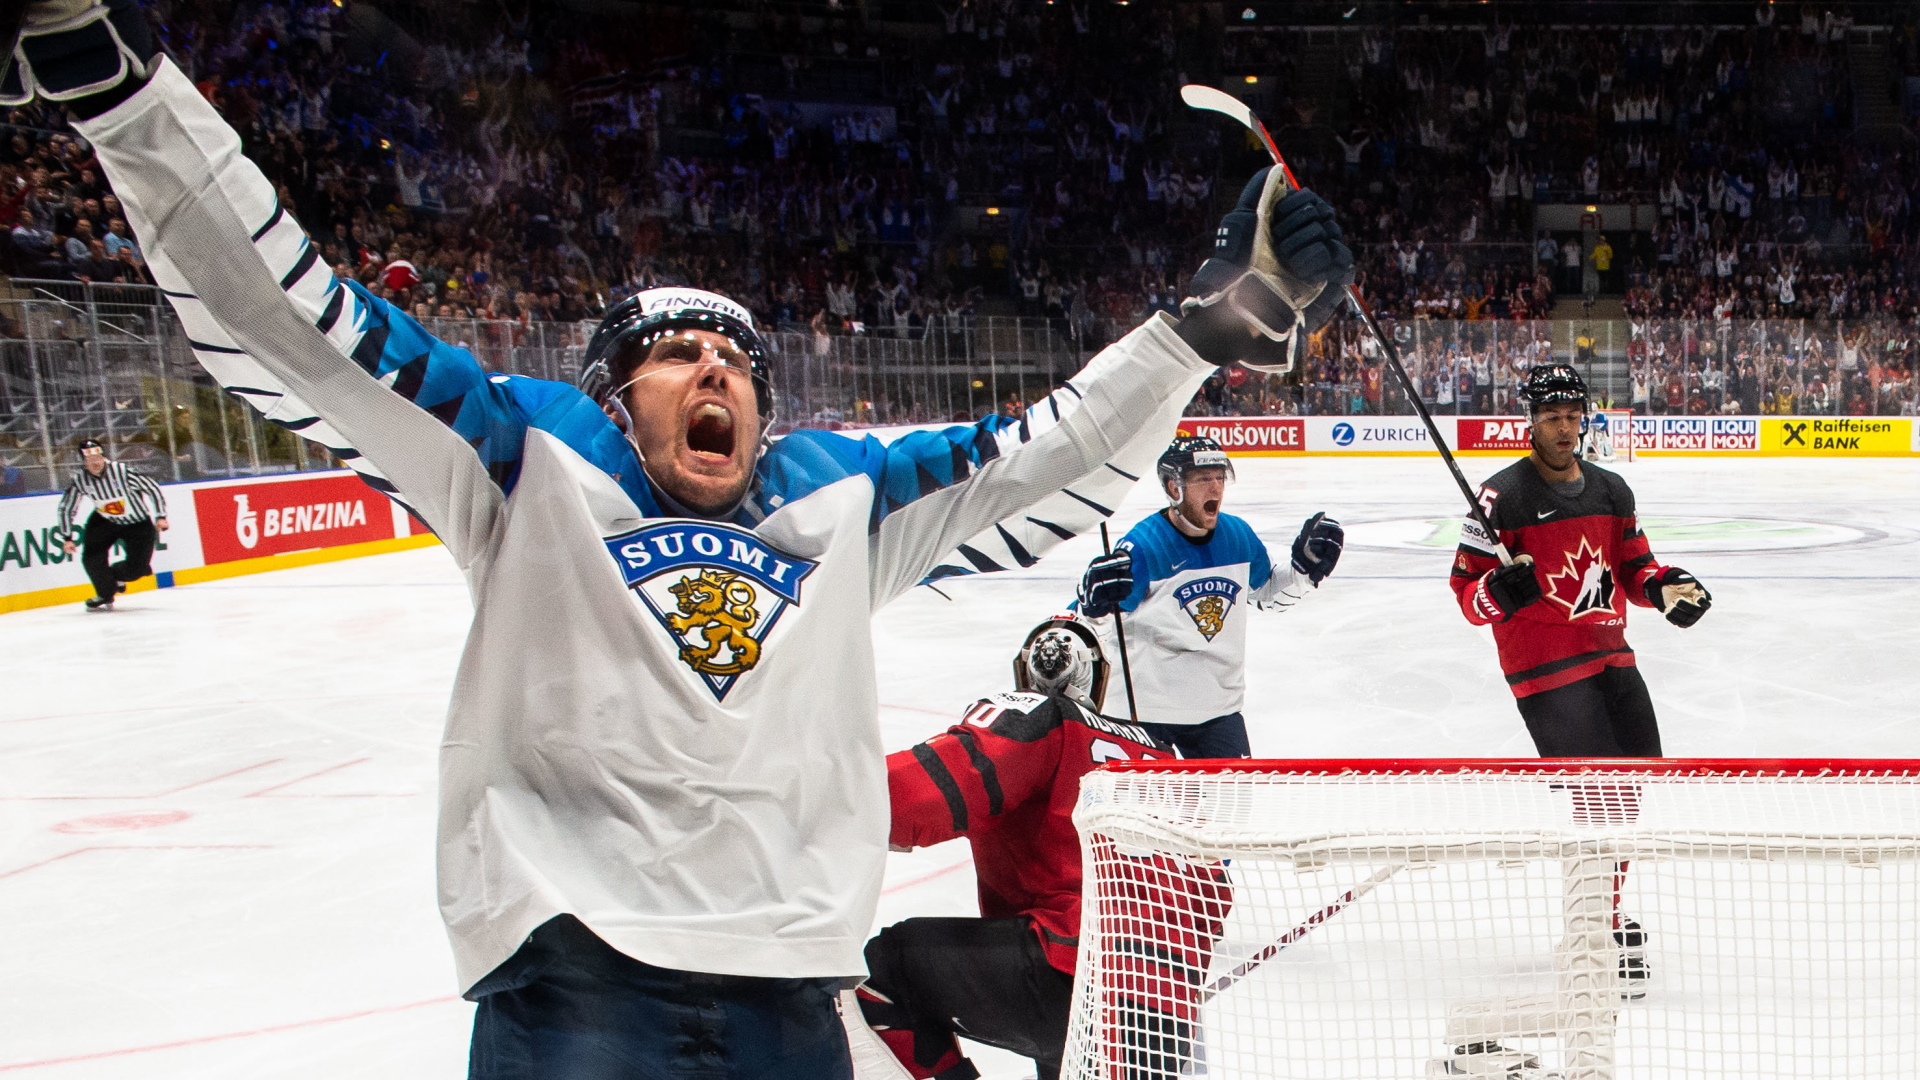 Der finnische Eishockeyspieler Marko Anttila feiert, nachdem er ein Tor gegen den kanadischen Torwart Matt Murray erzielt hat.  | Bildquelle: dpa